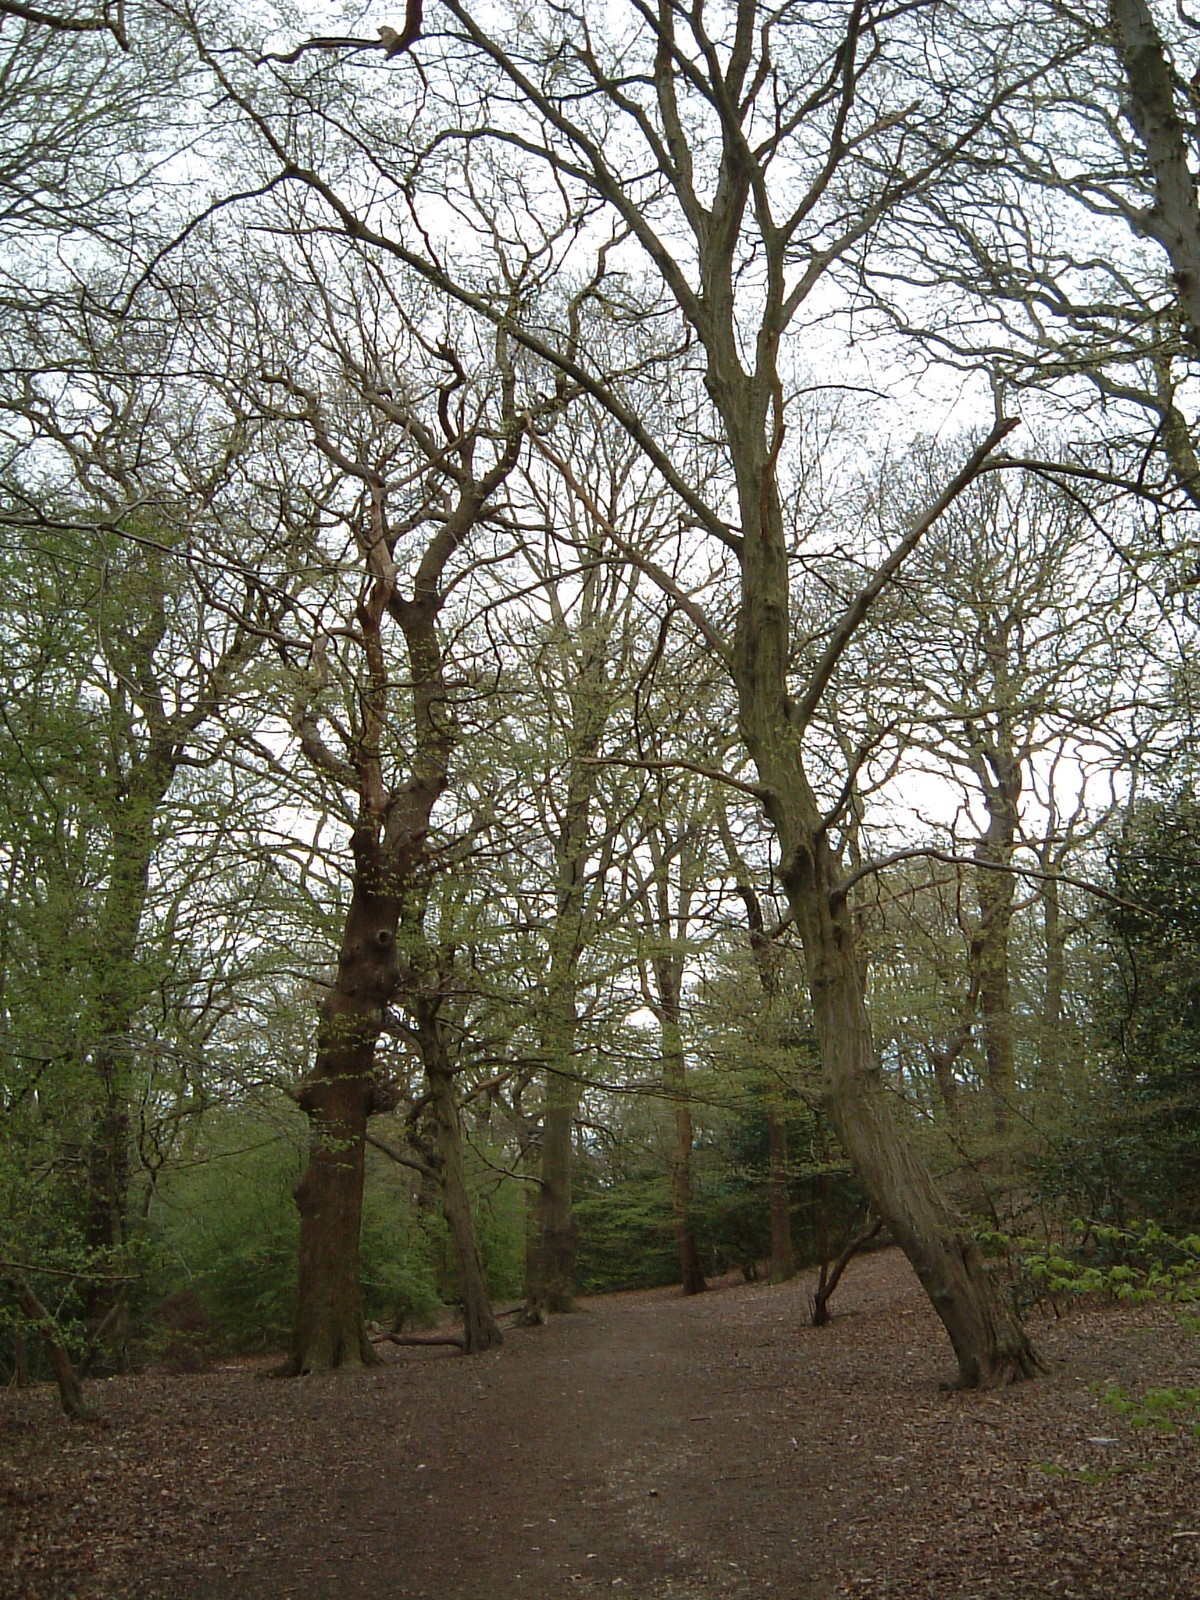 Queen's Wood